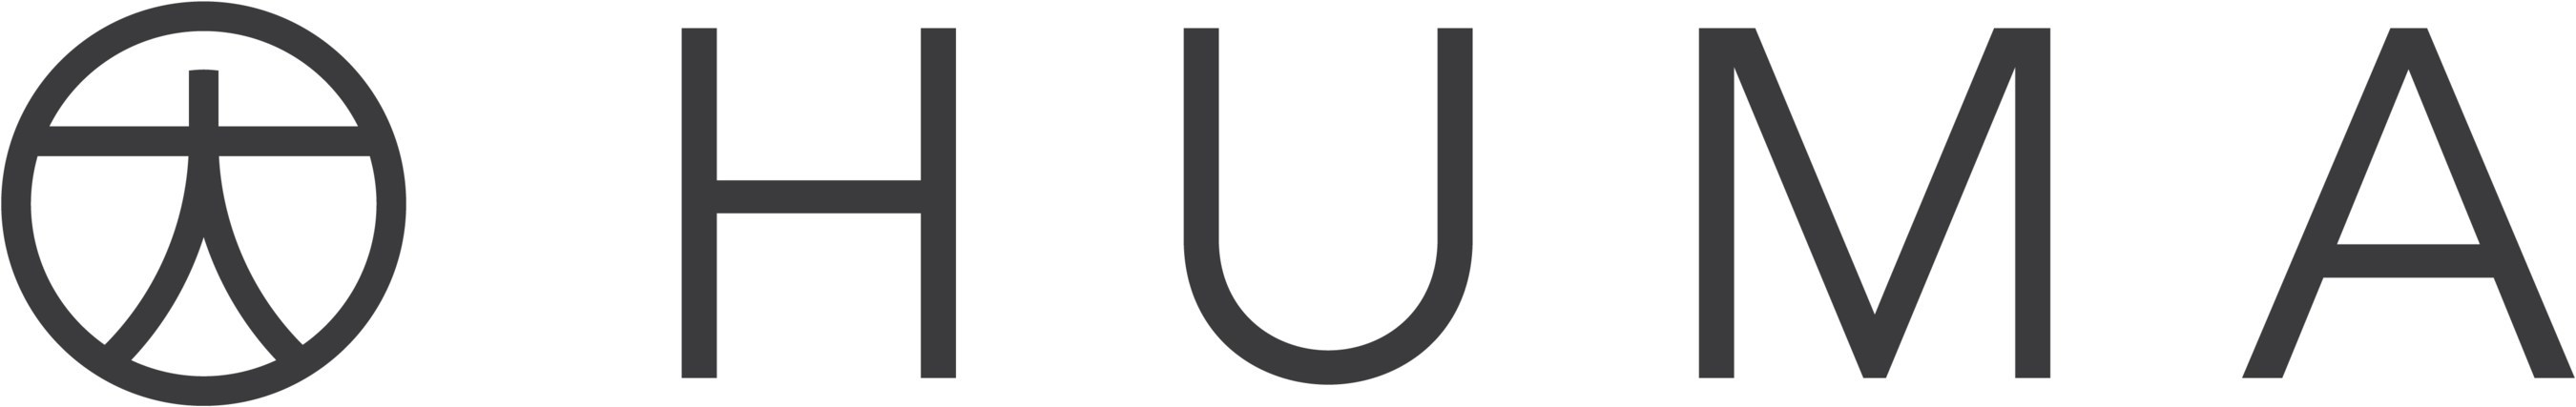 Huma_Logo